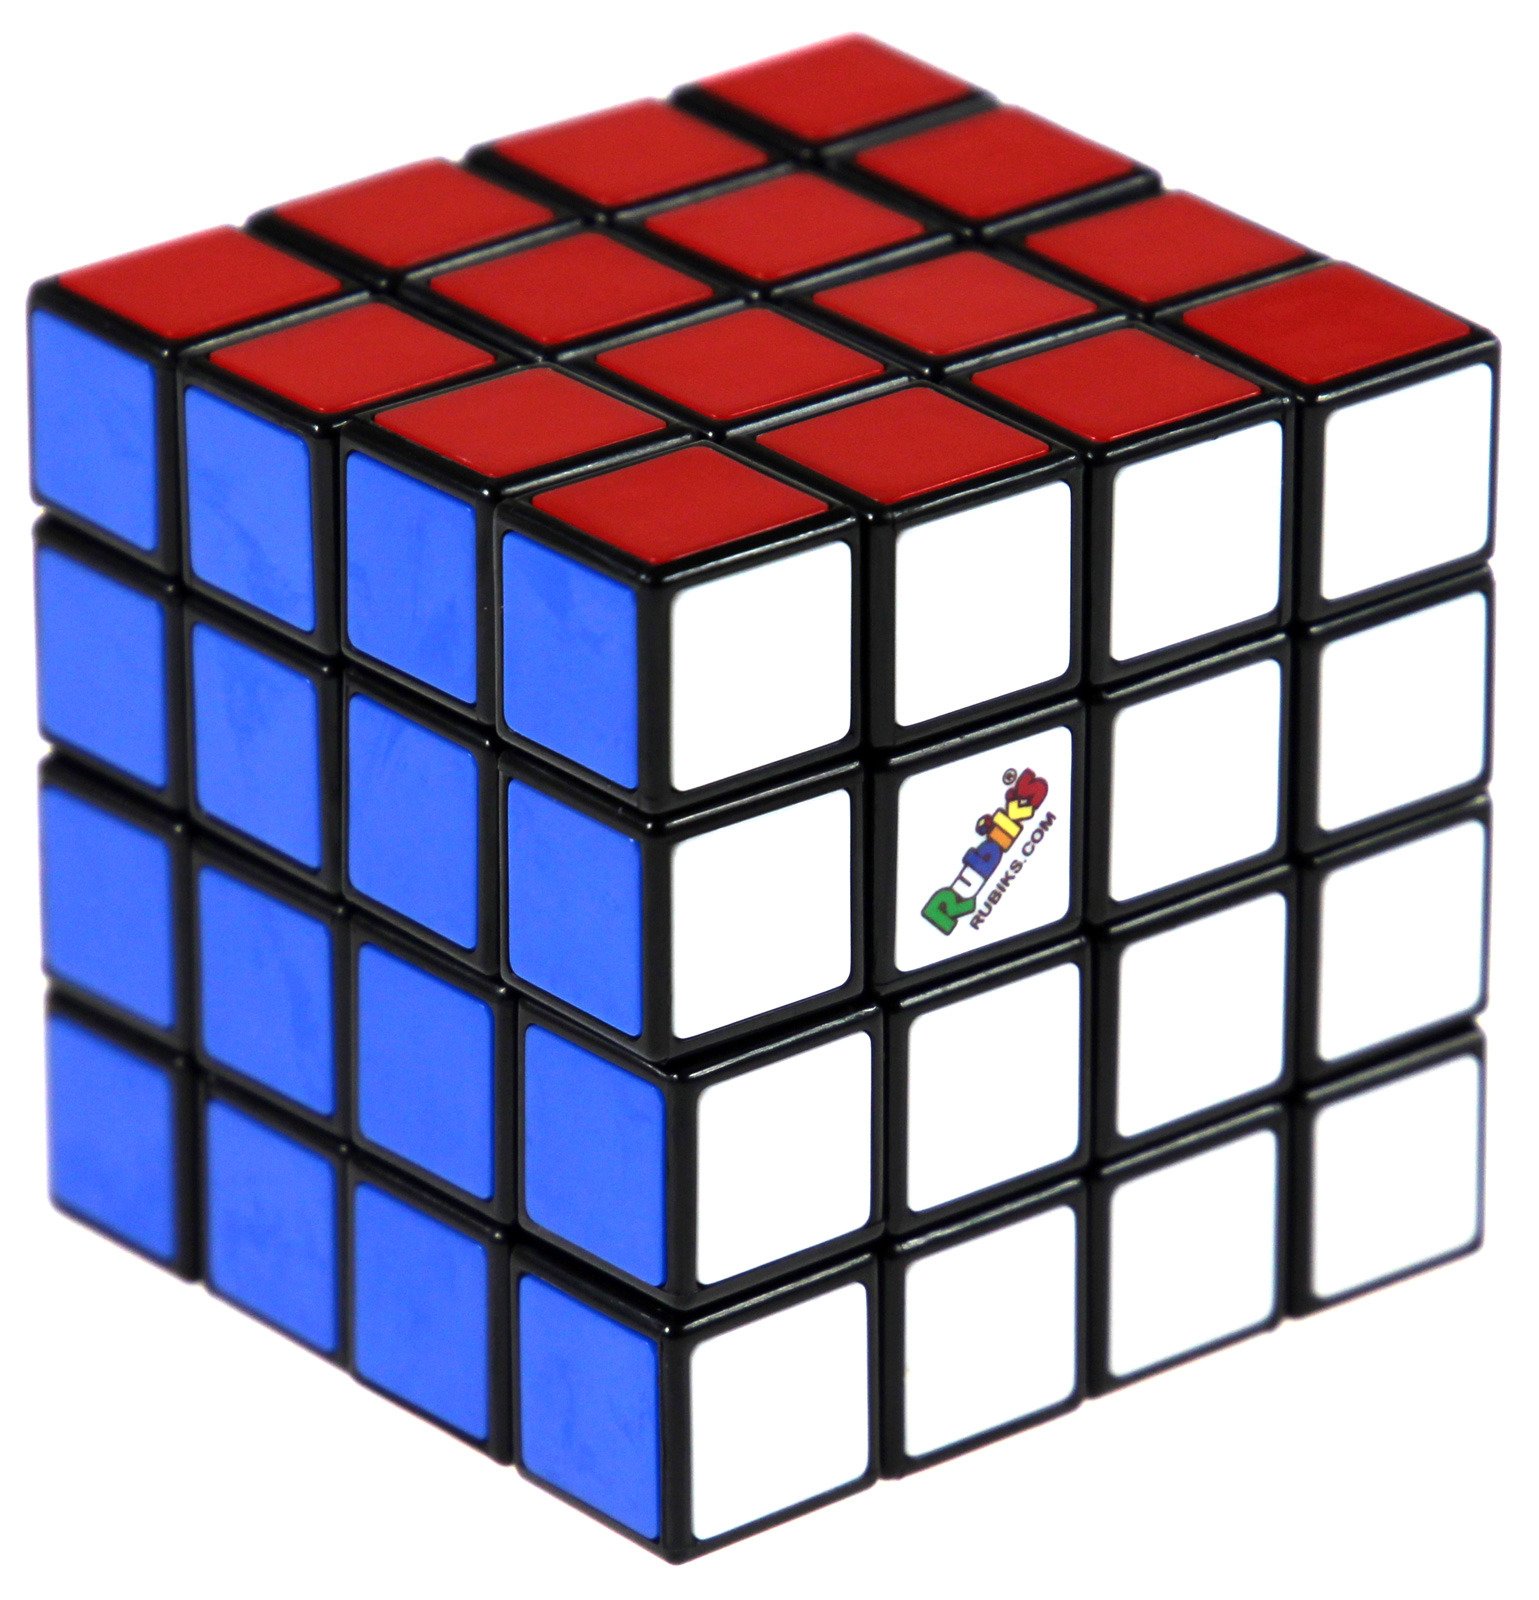 Algorytm Ukladania Kostki Rubika Pdf Kostka Rubika 4x4x4 | SPRZEDAŻ HURTOWA \ Rubik's | G3 Poland